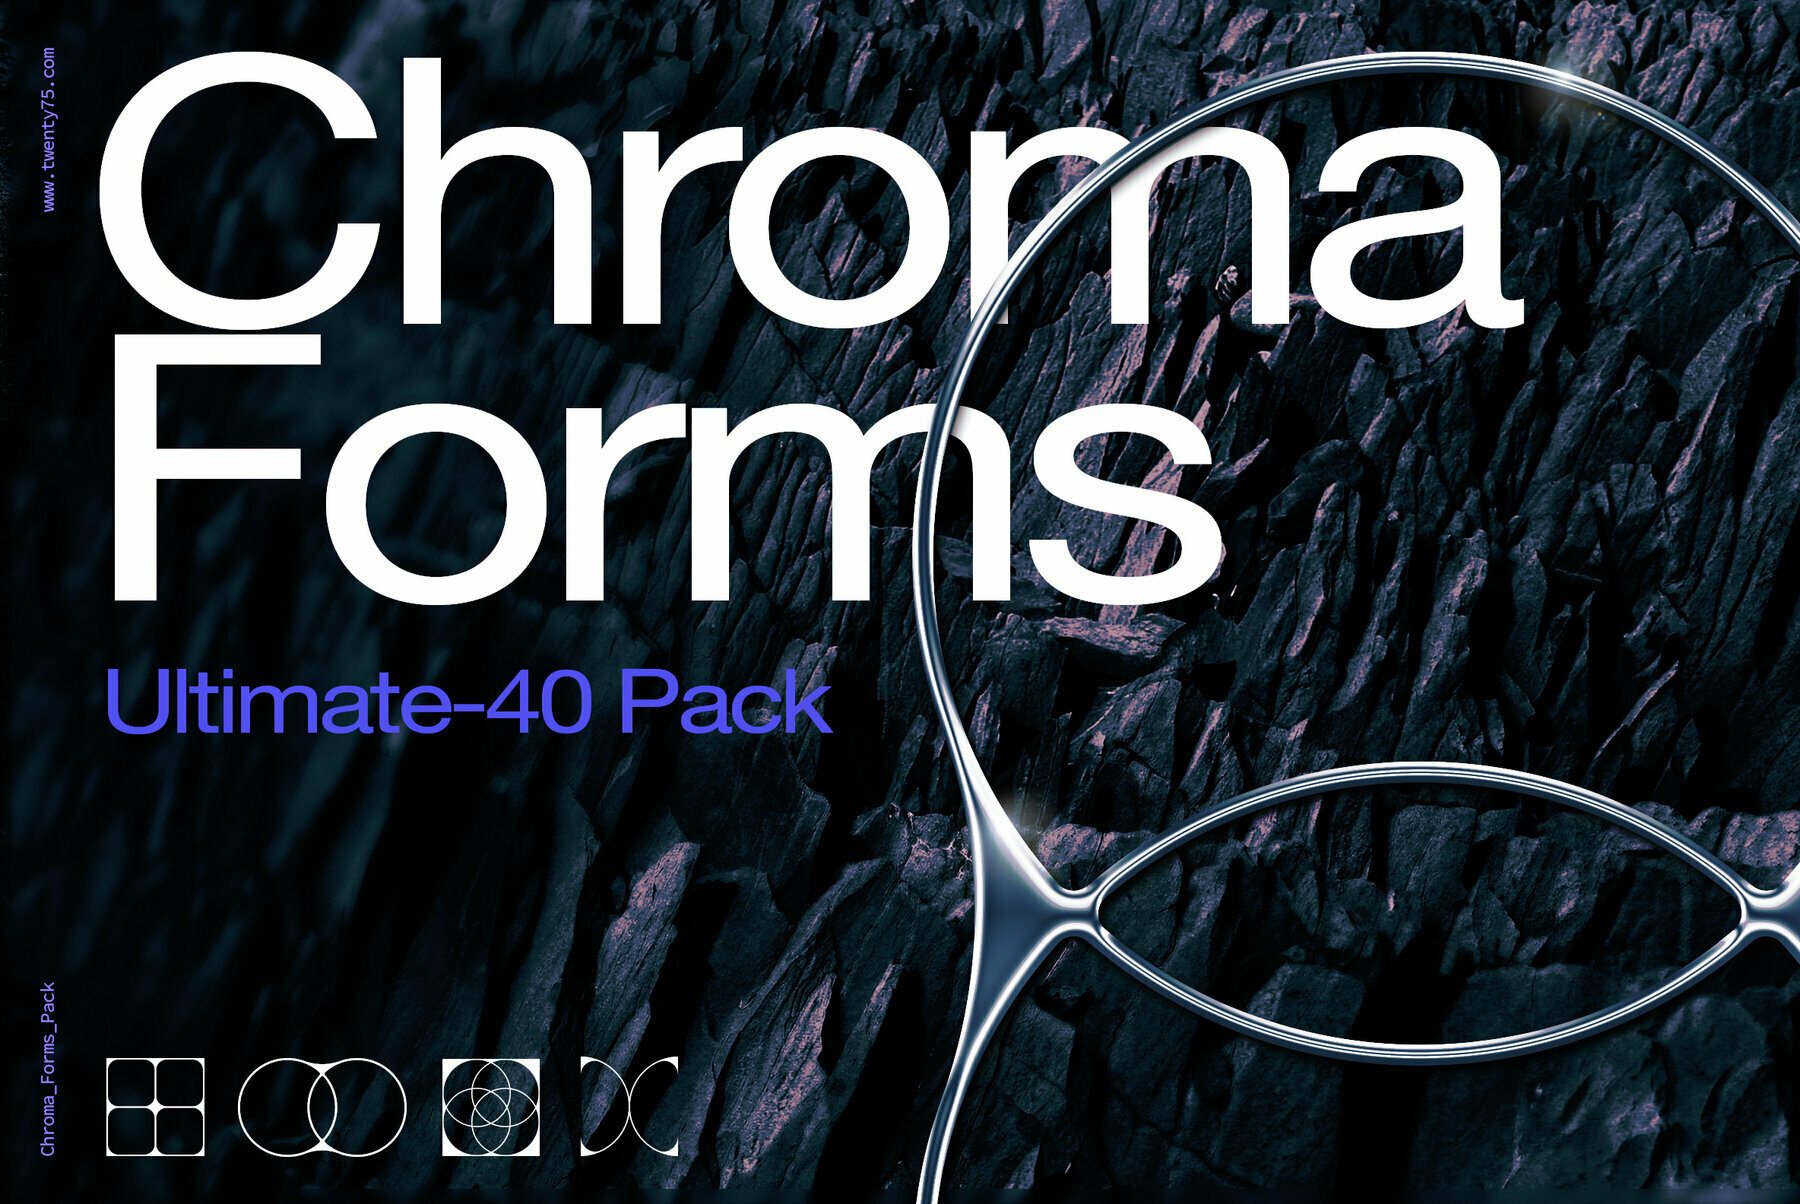 120个新未来主义抽象艺术酸性镀铬形状3D色彩效果包 Chroma Forms Ultimate 40 Pack（5147）图层云